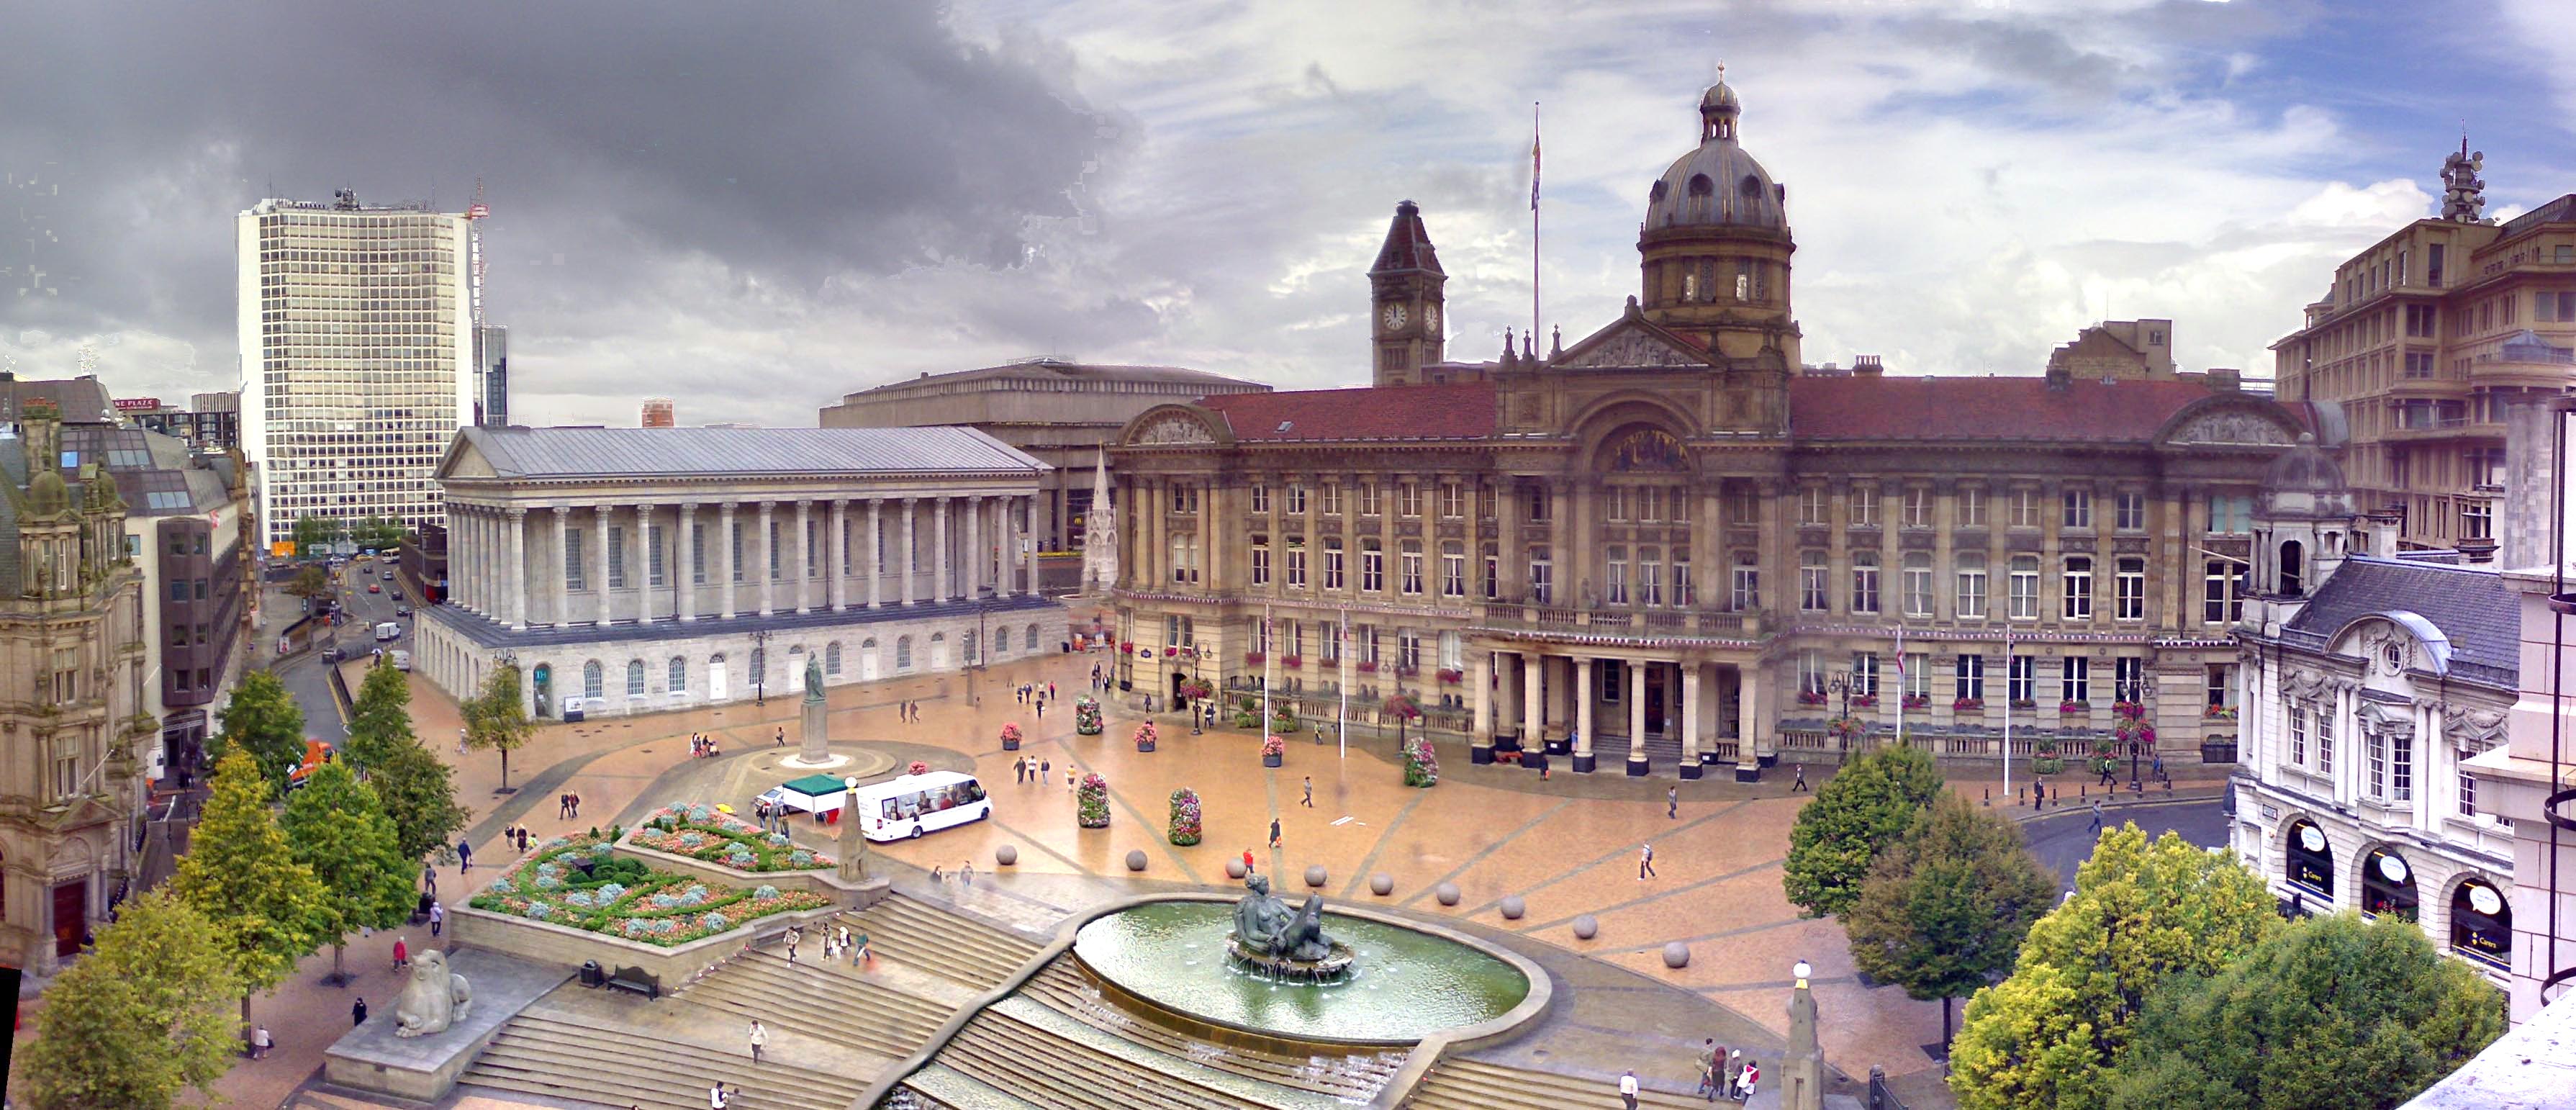 Файл:Birmingham town hall.jpg — Вікіпедія